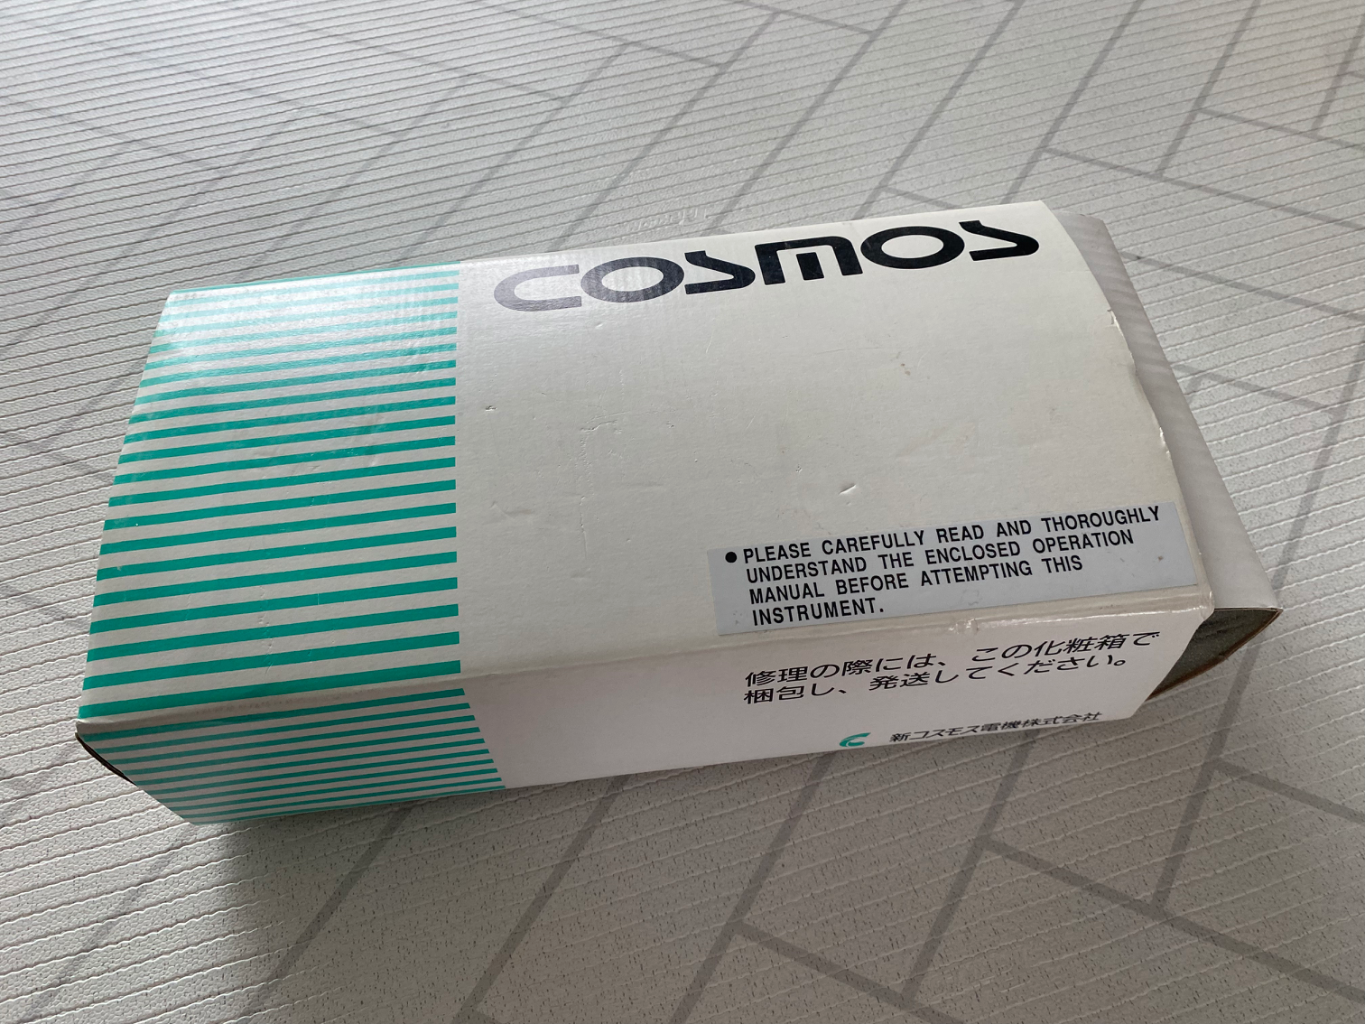 코스모스 XO-326 S (산소농도측정기)